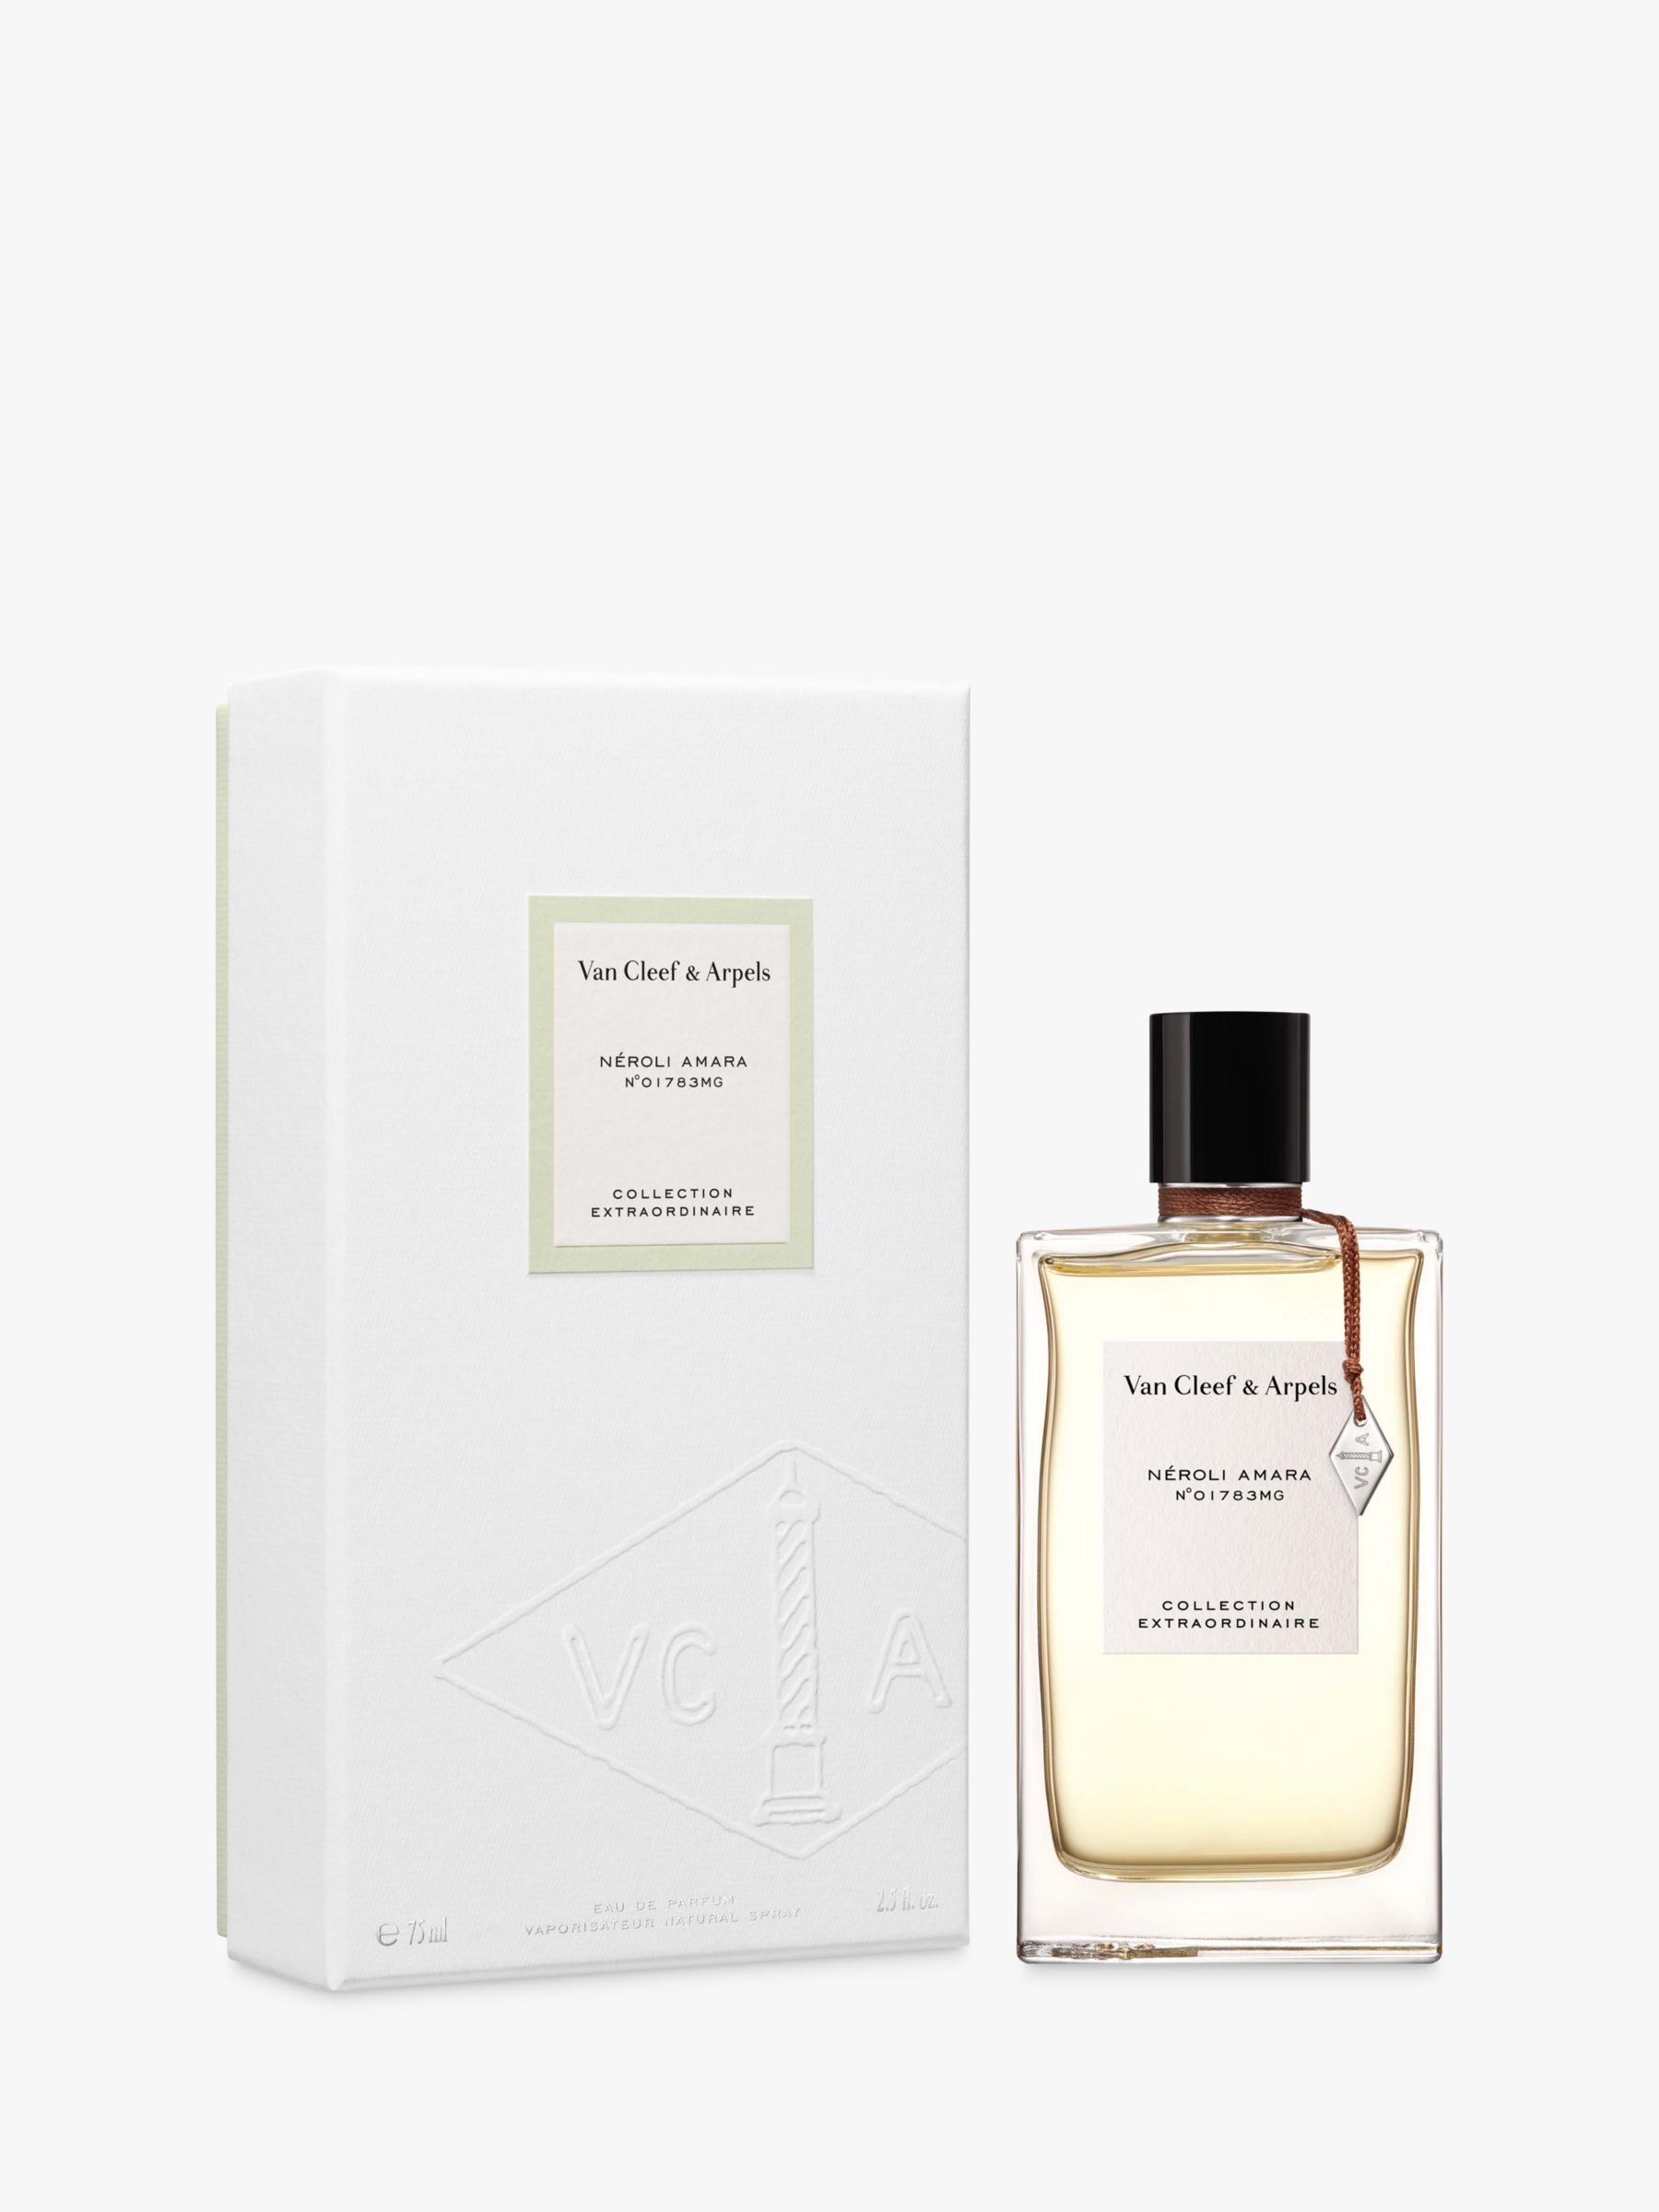 Van Cleef & Arpels Collection Extraordinaire Neroli Amara Eau de Parfum, 75ml 2